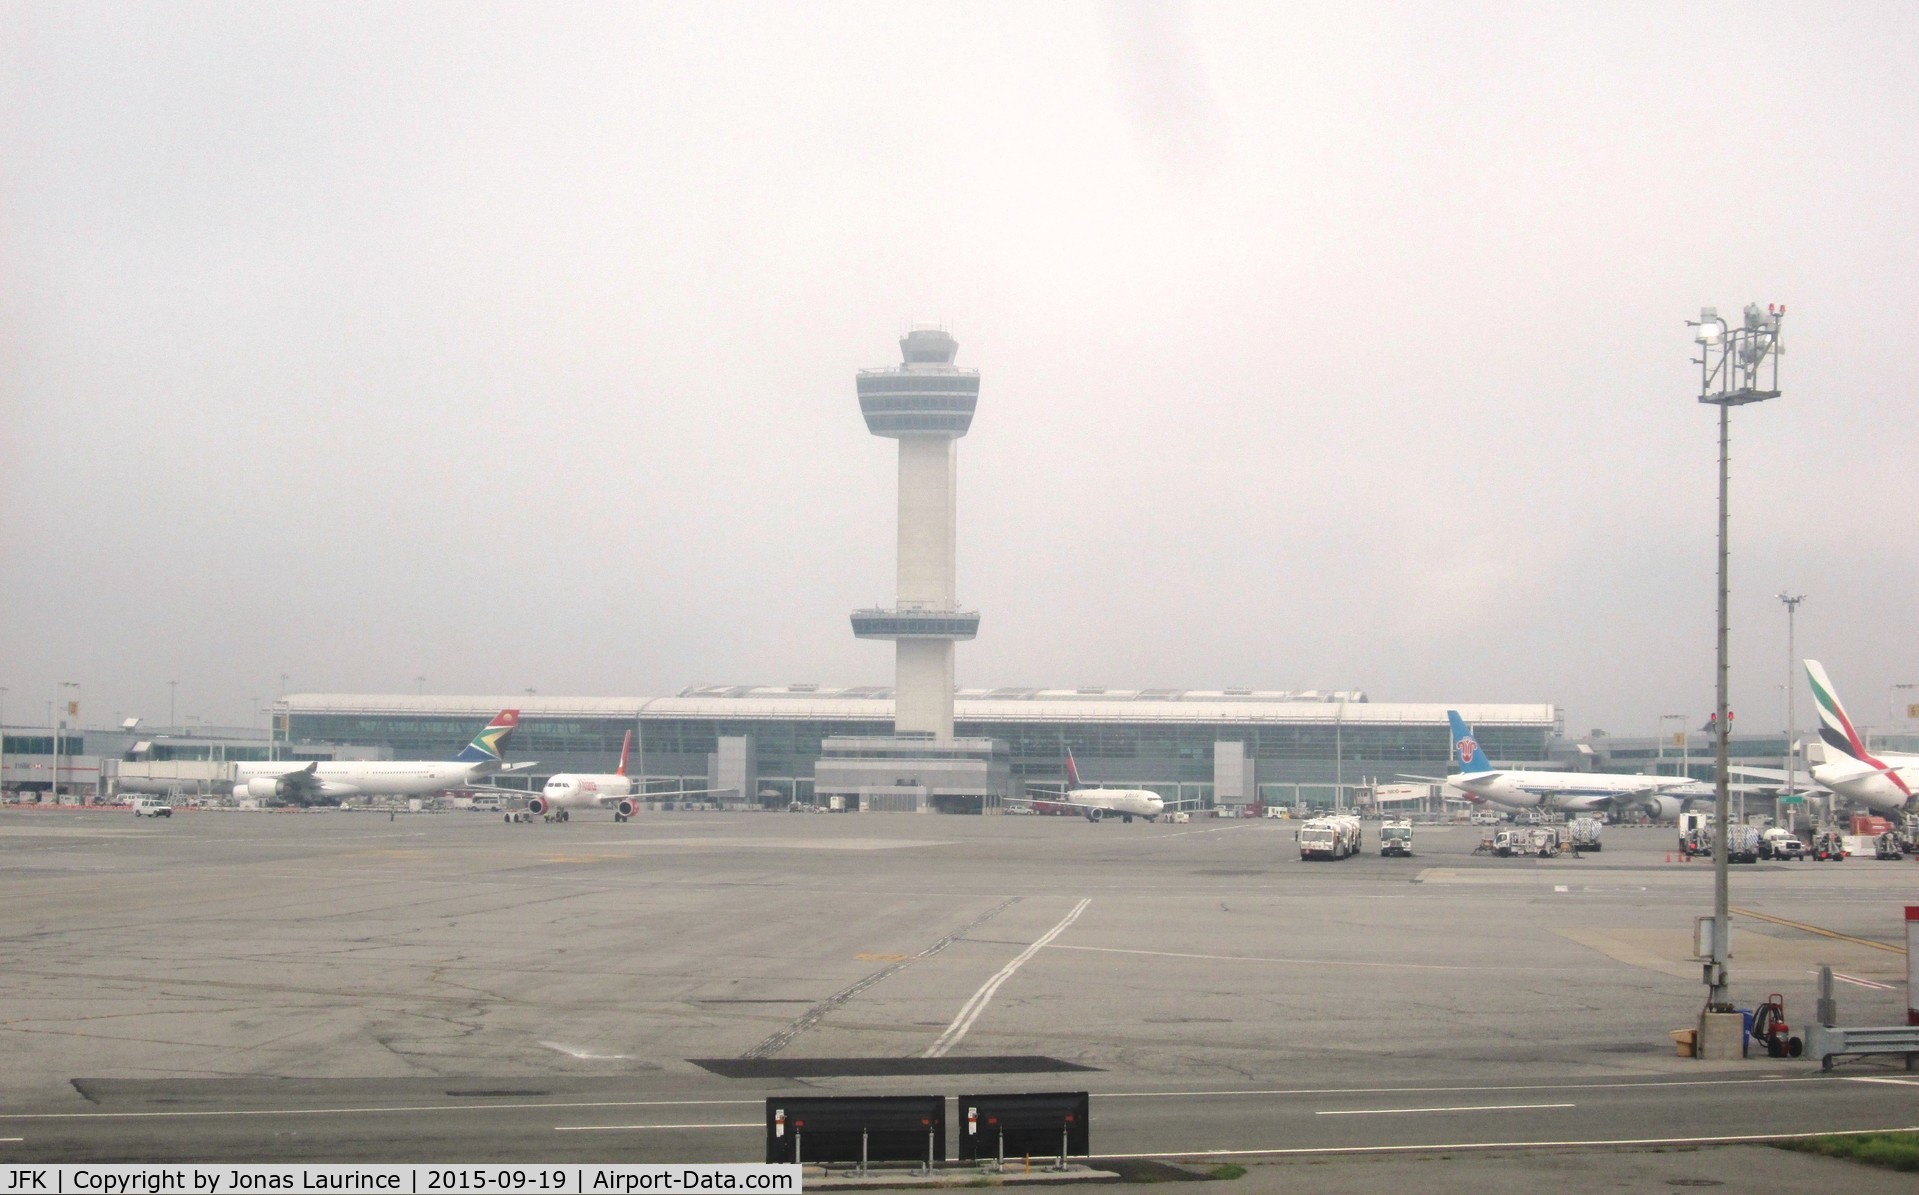 John F Kennedy International Airport (JFK) - View of the JFK Airport of New York